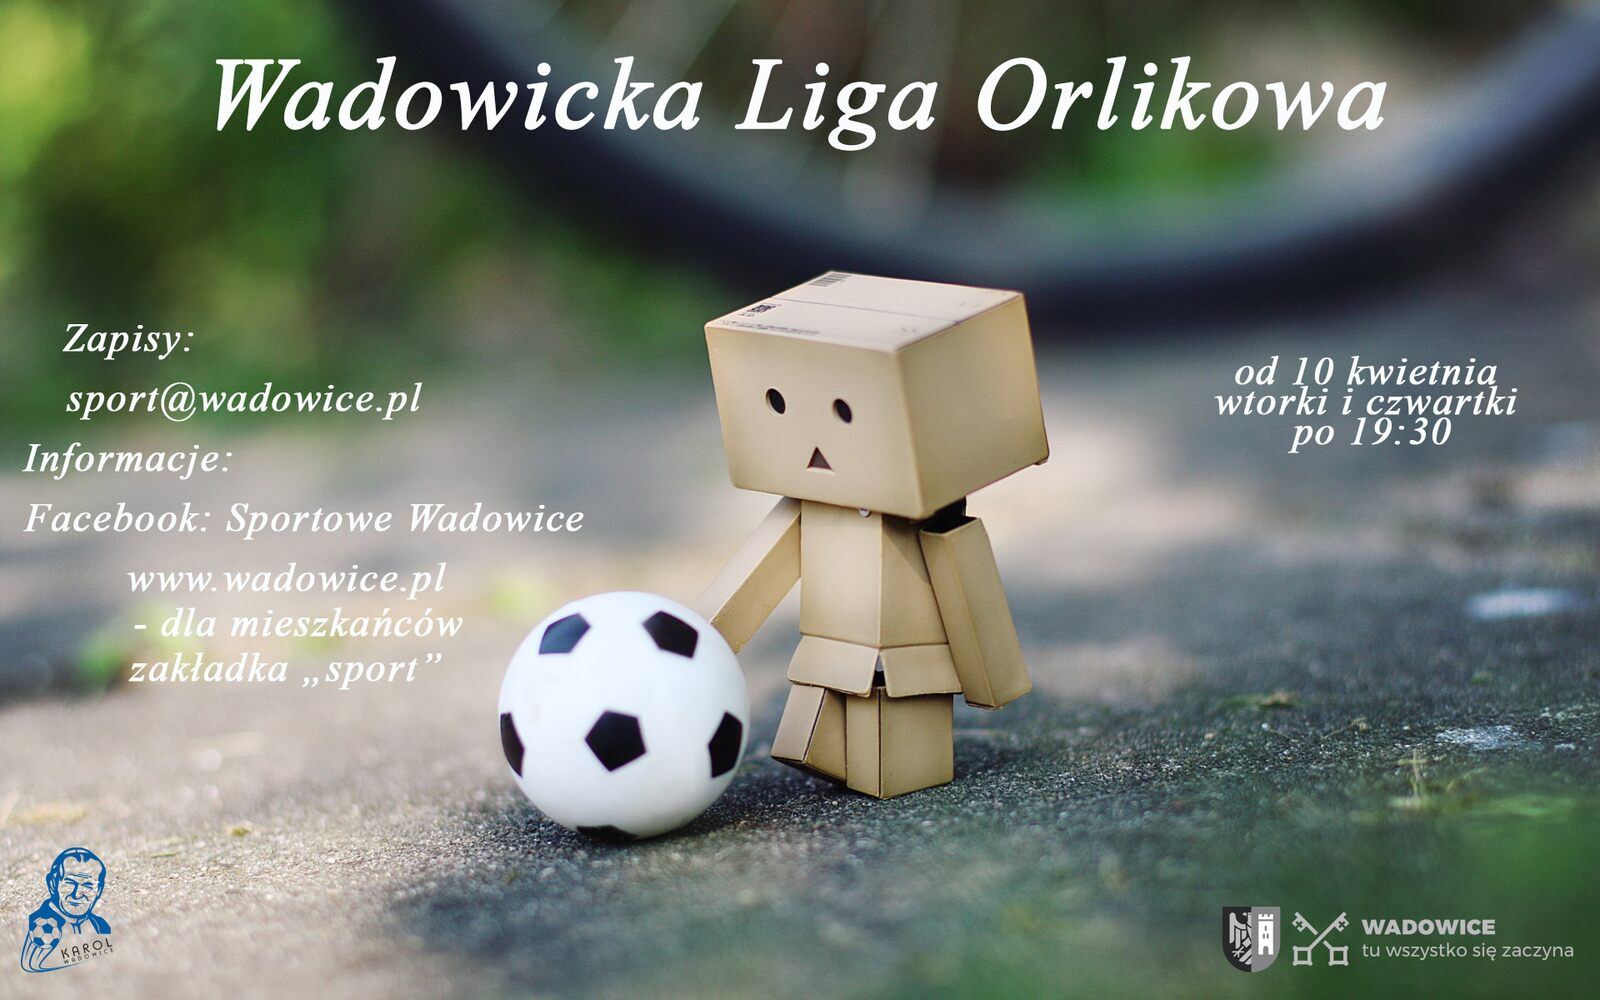 Wadowicka liga orlikowa - Wadowicka Liga Orlikowa